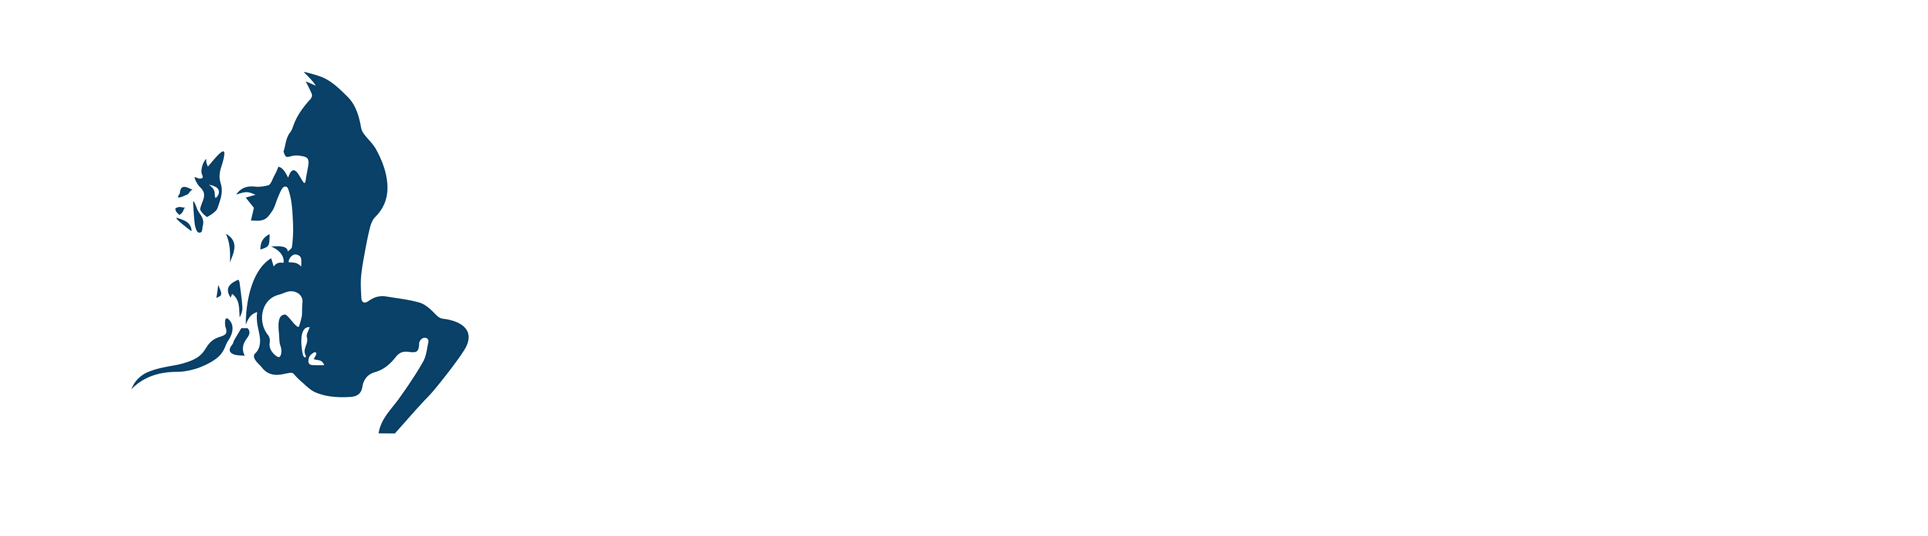 Πανεπιστήμιο Δυτικής Αττικής – University of West Attica